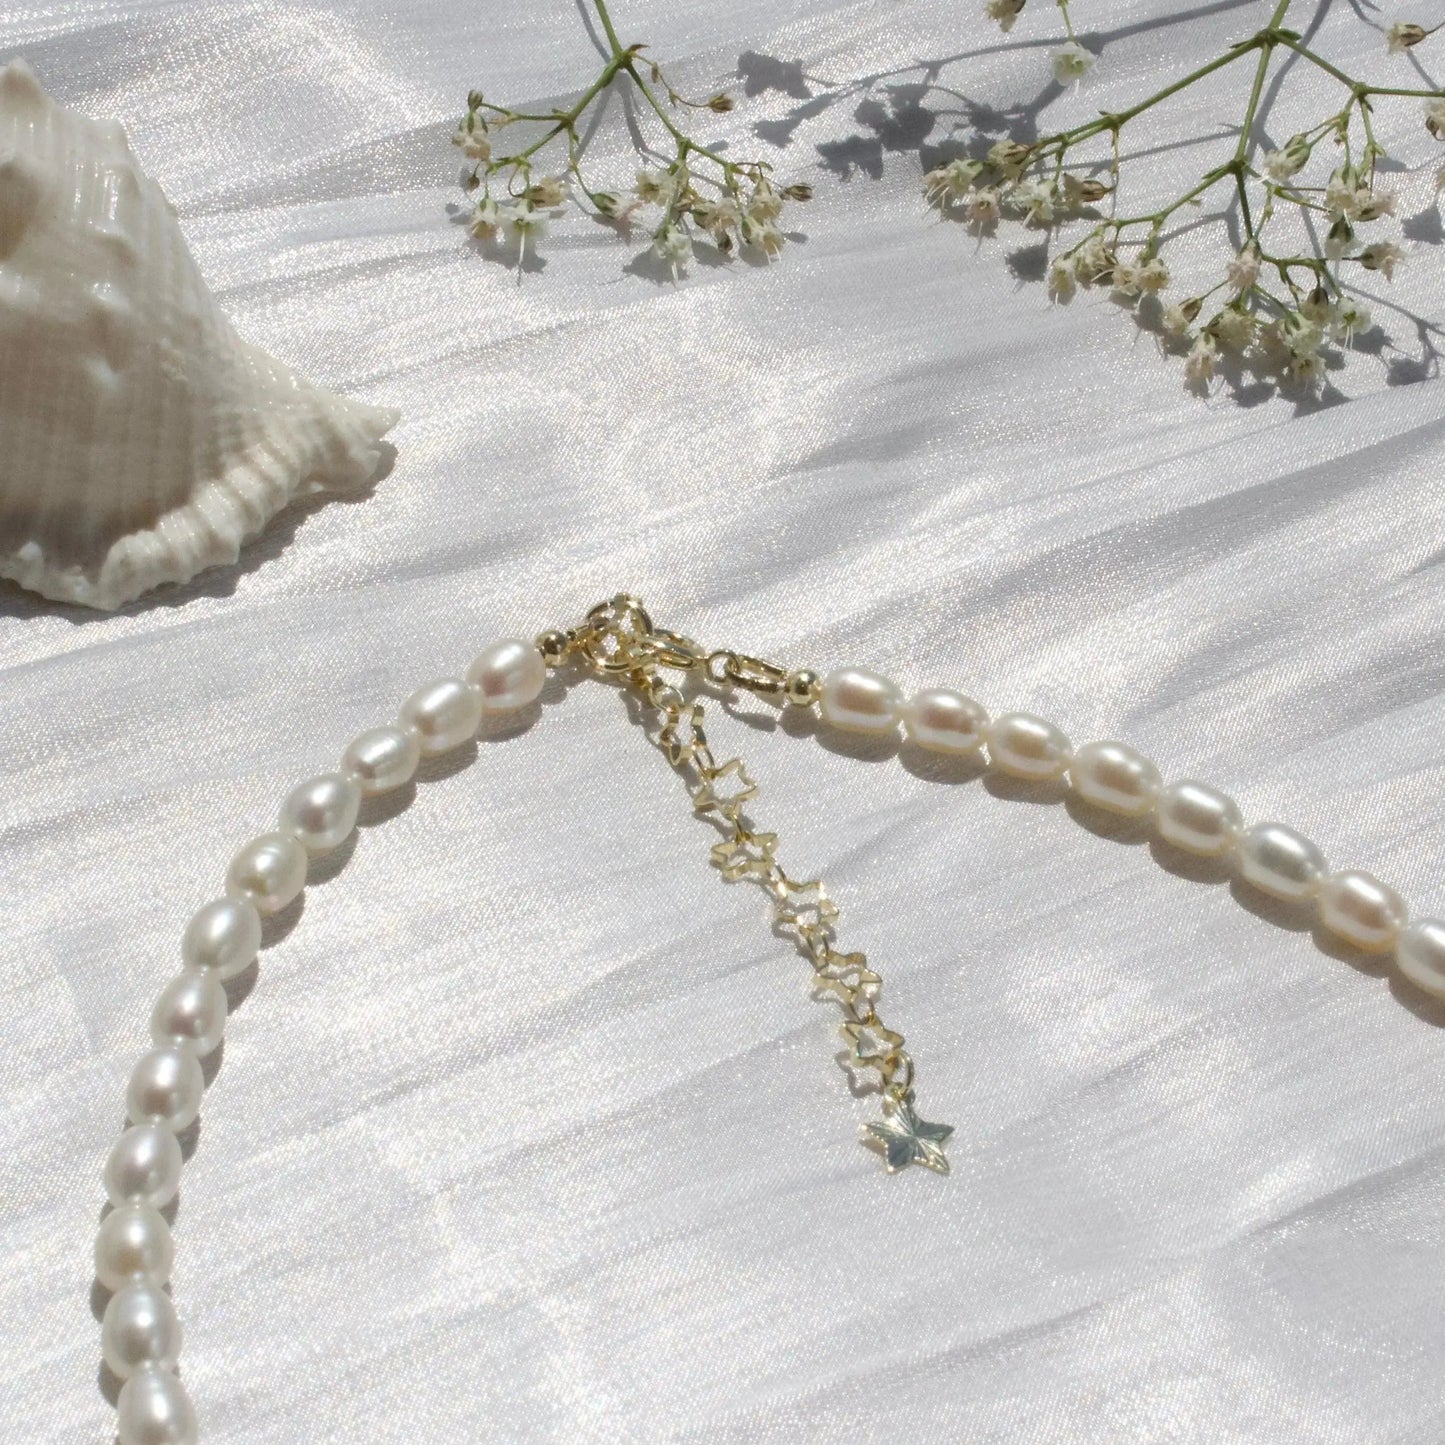 5.5mm Klassische Perlenkette Schmuck Online ¦ JK Jewelry & Accessories